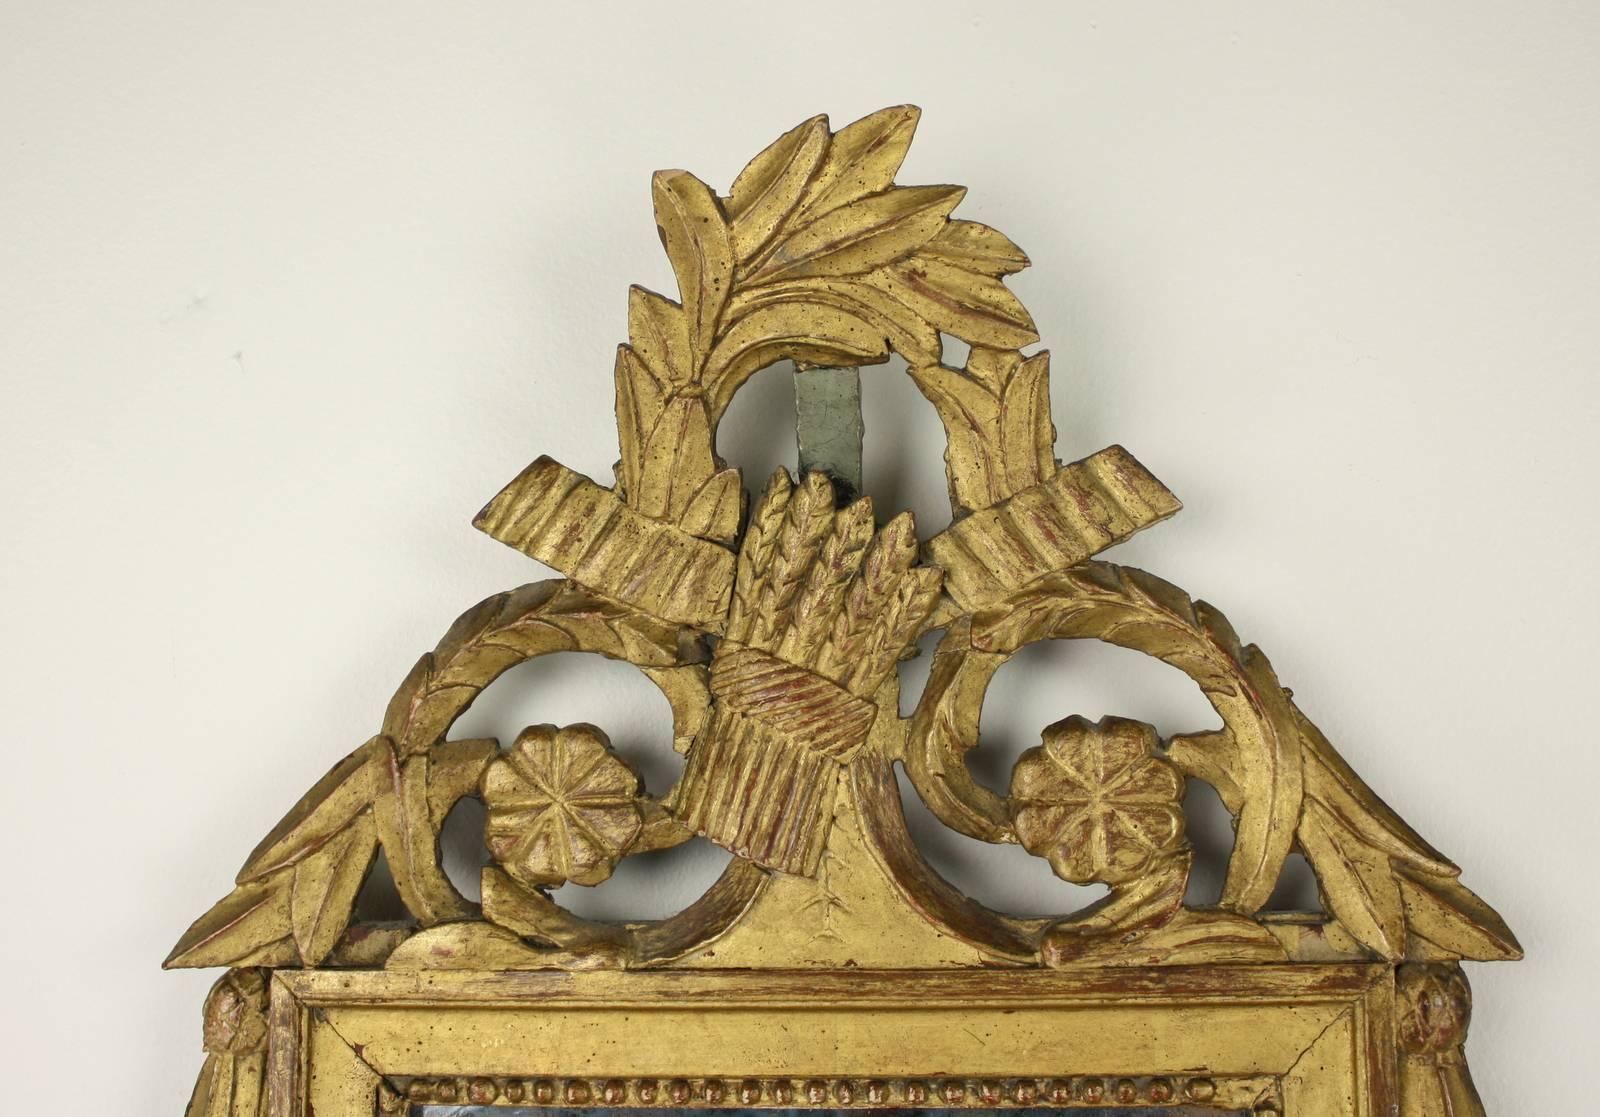 Un beau miroir mural français sculpté et doré du milieu du 18ème siècle avec des détails décoratifs en forme de gerbe de blé et de guirlande florale classique. Le verre, avec quelques taches et fissures, ajoute un merveilleux intérêt visuel. Il y a